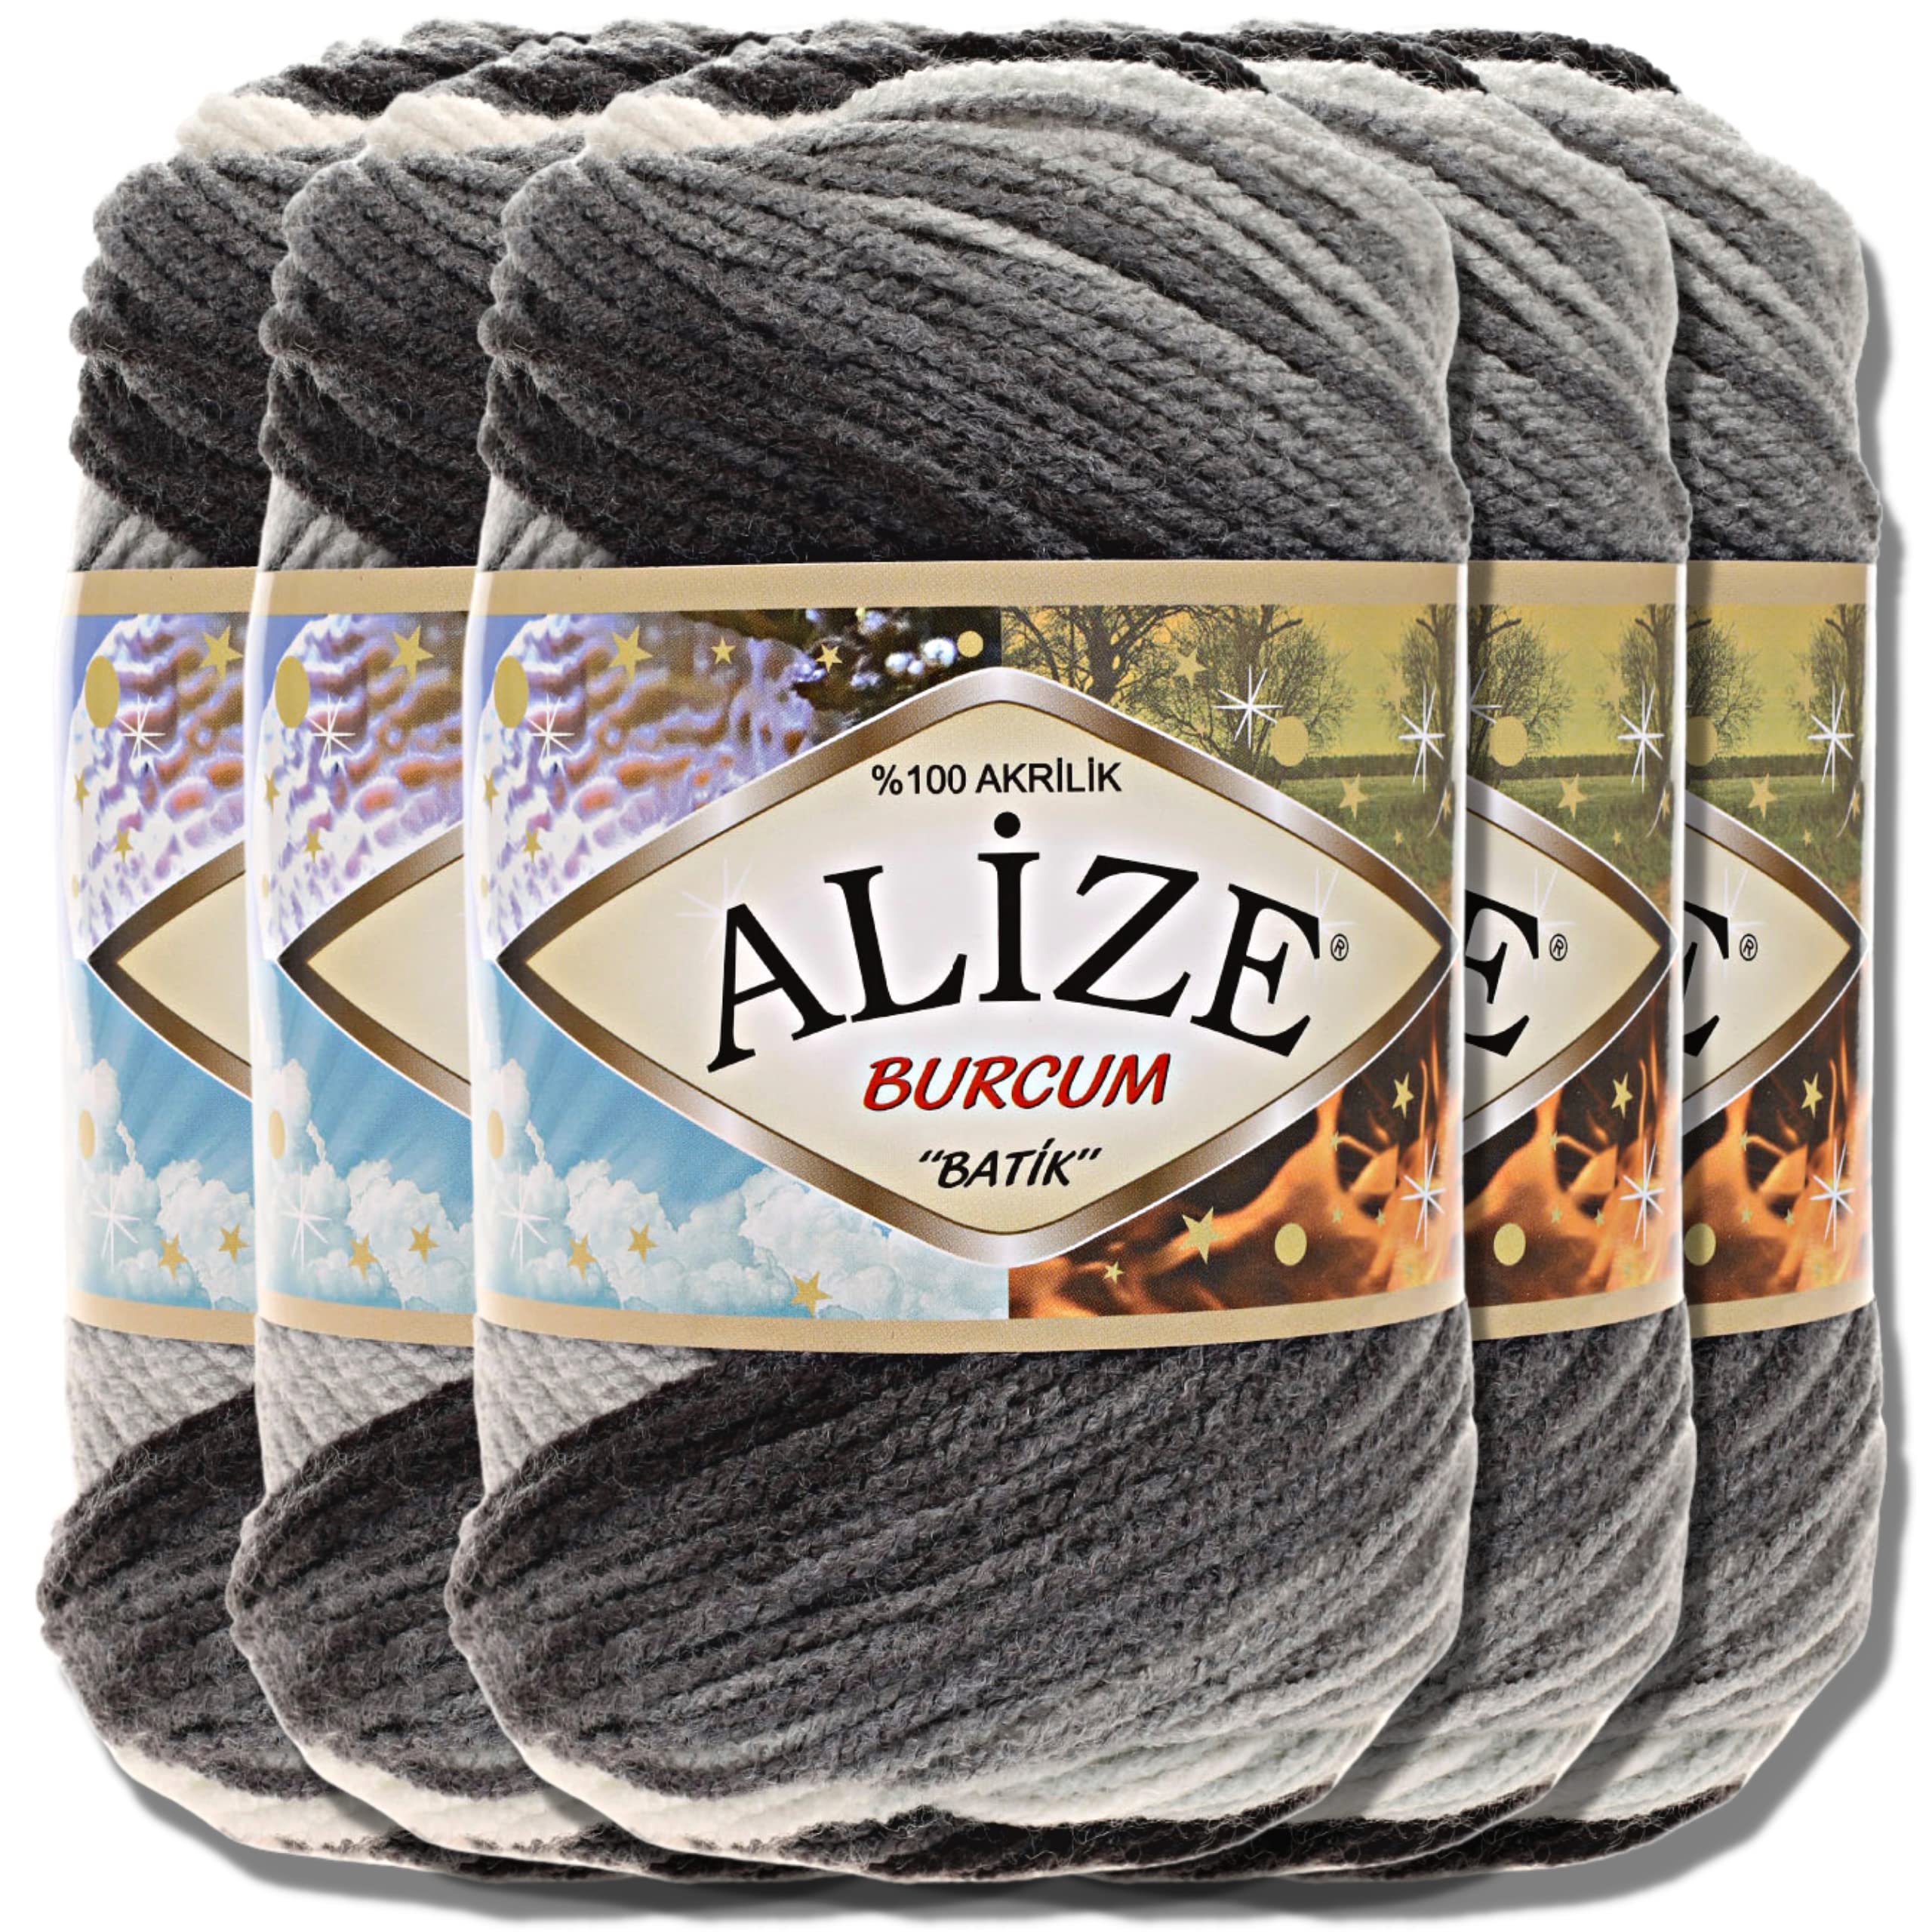 Alize 5x 100g Burcum Batik Türkische Premium Wolle 100% Acryl Handstrickgarne | Strickgarn | Yarn | Garn Babywolle mit Farbverlauf Baby zum Häkeln Stricken Kleidung (1900)